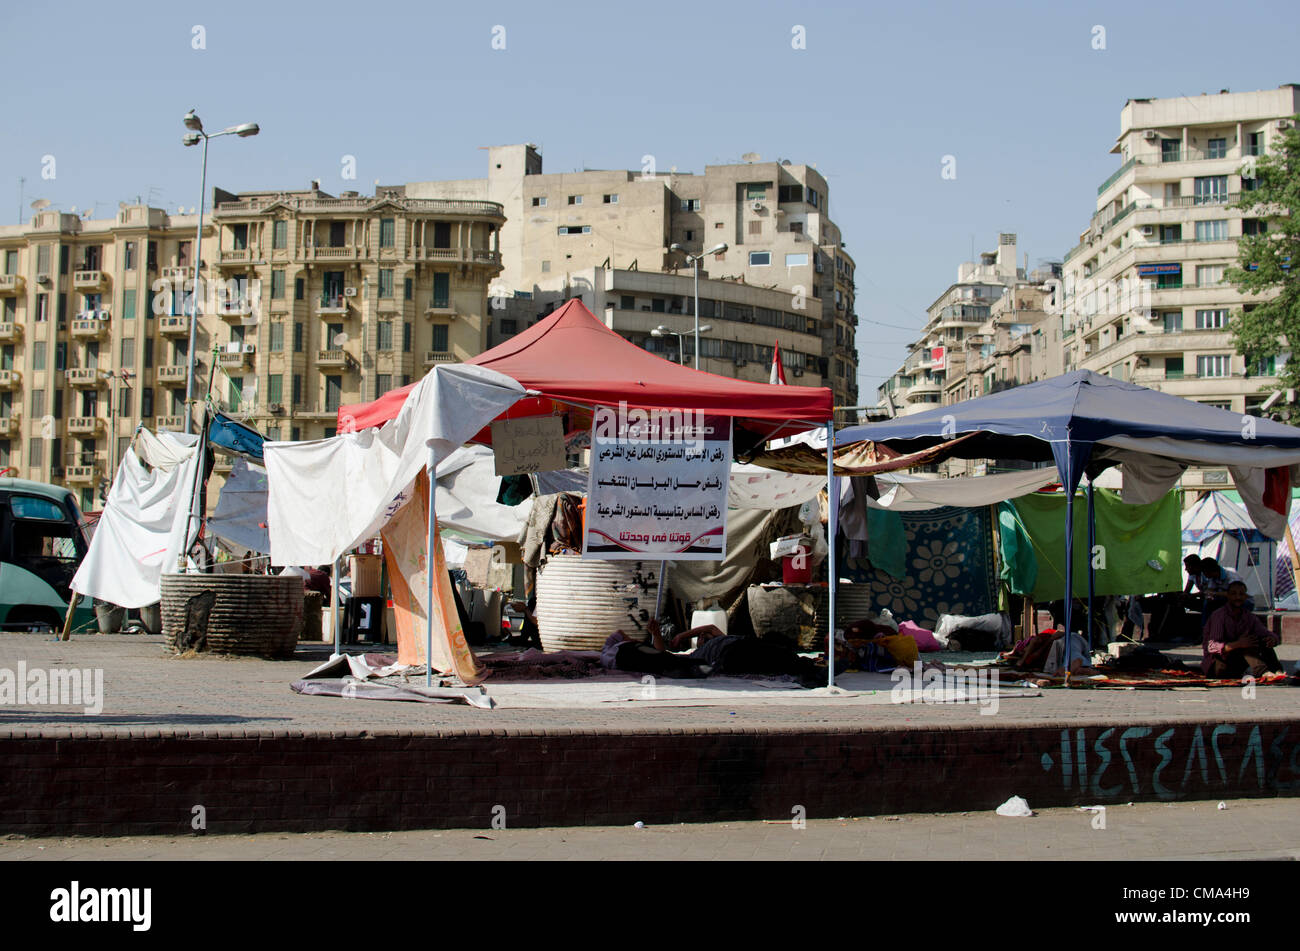 Les partisans de la candidate présidentielle Mohammed Morsi camper au Caire, la place Tahrir en Égypte le dimanche 01 juillet 2012. Banque D'Images